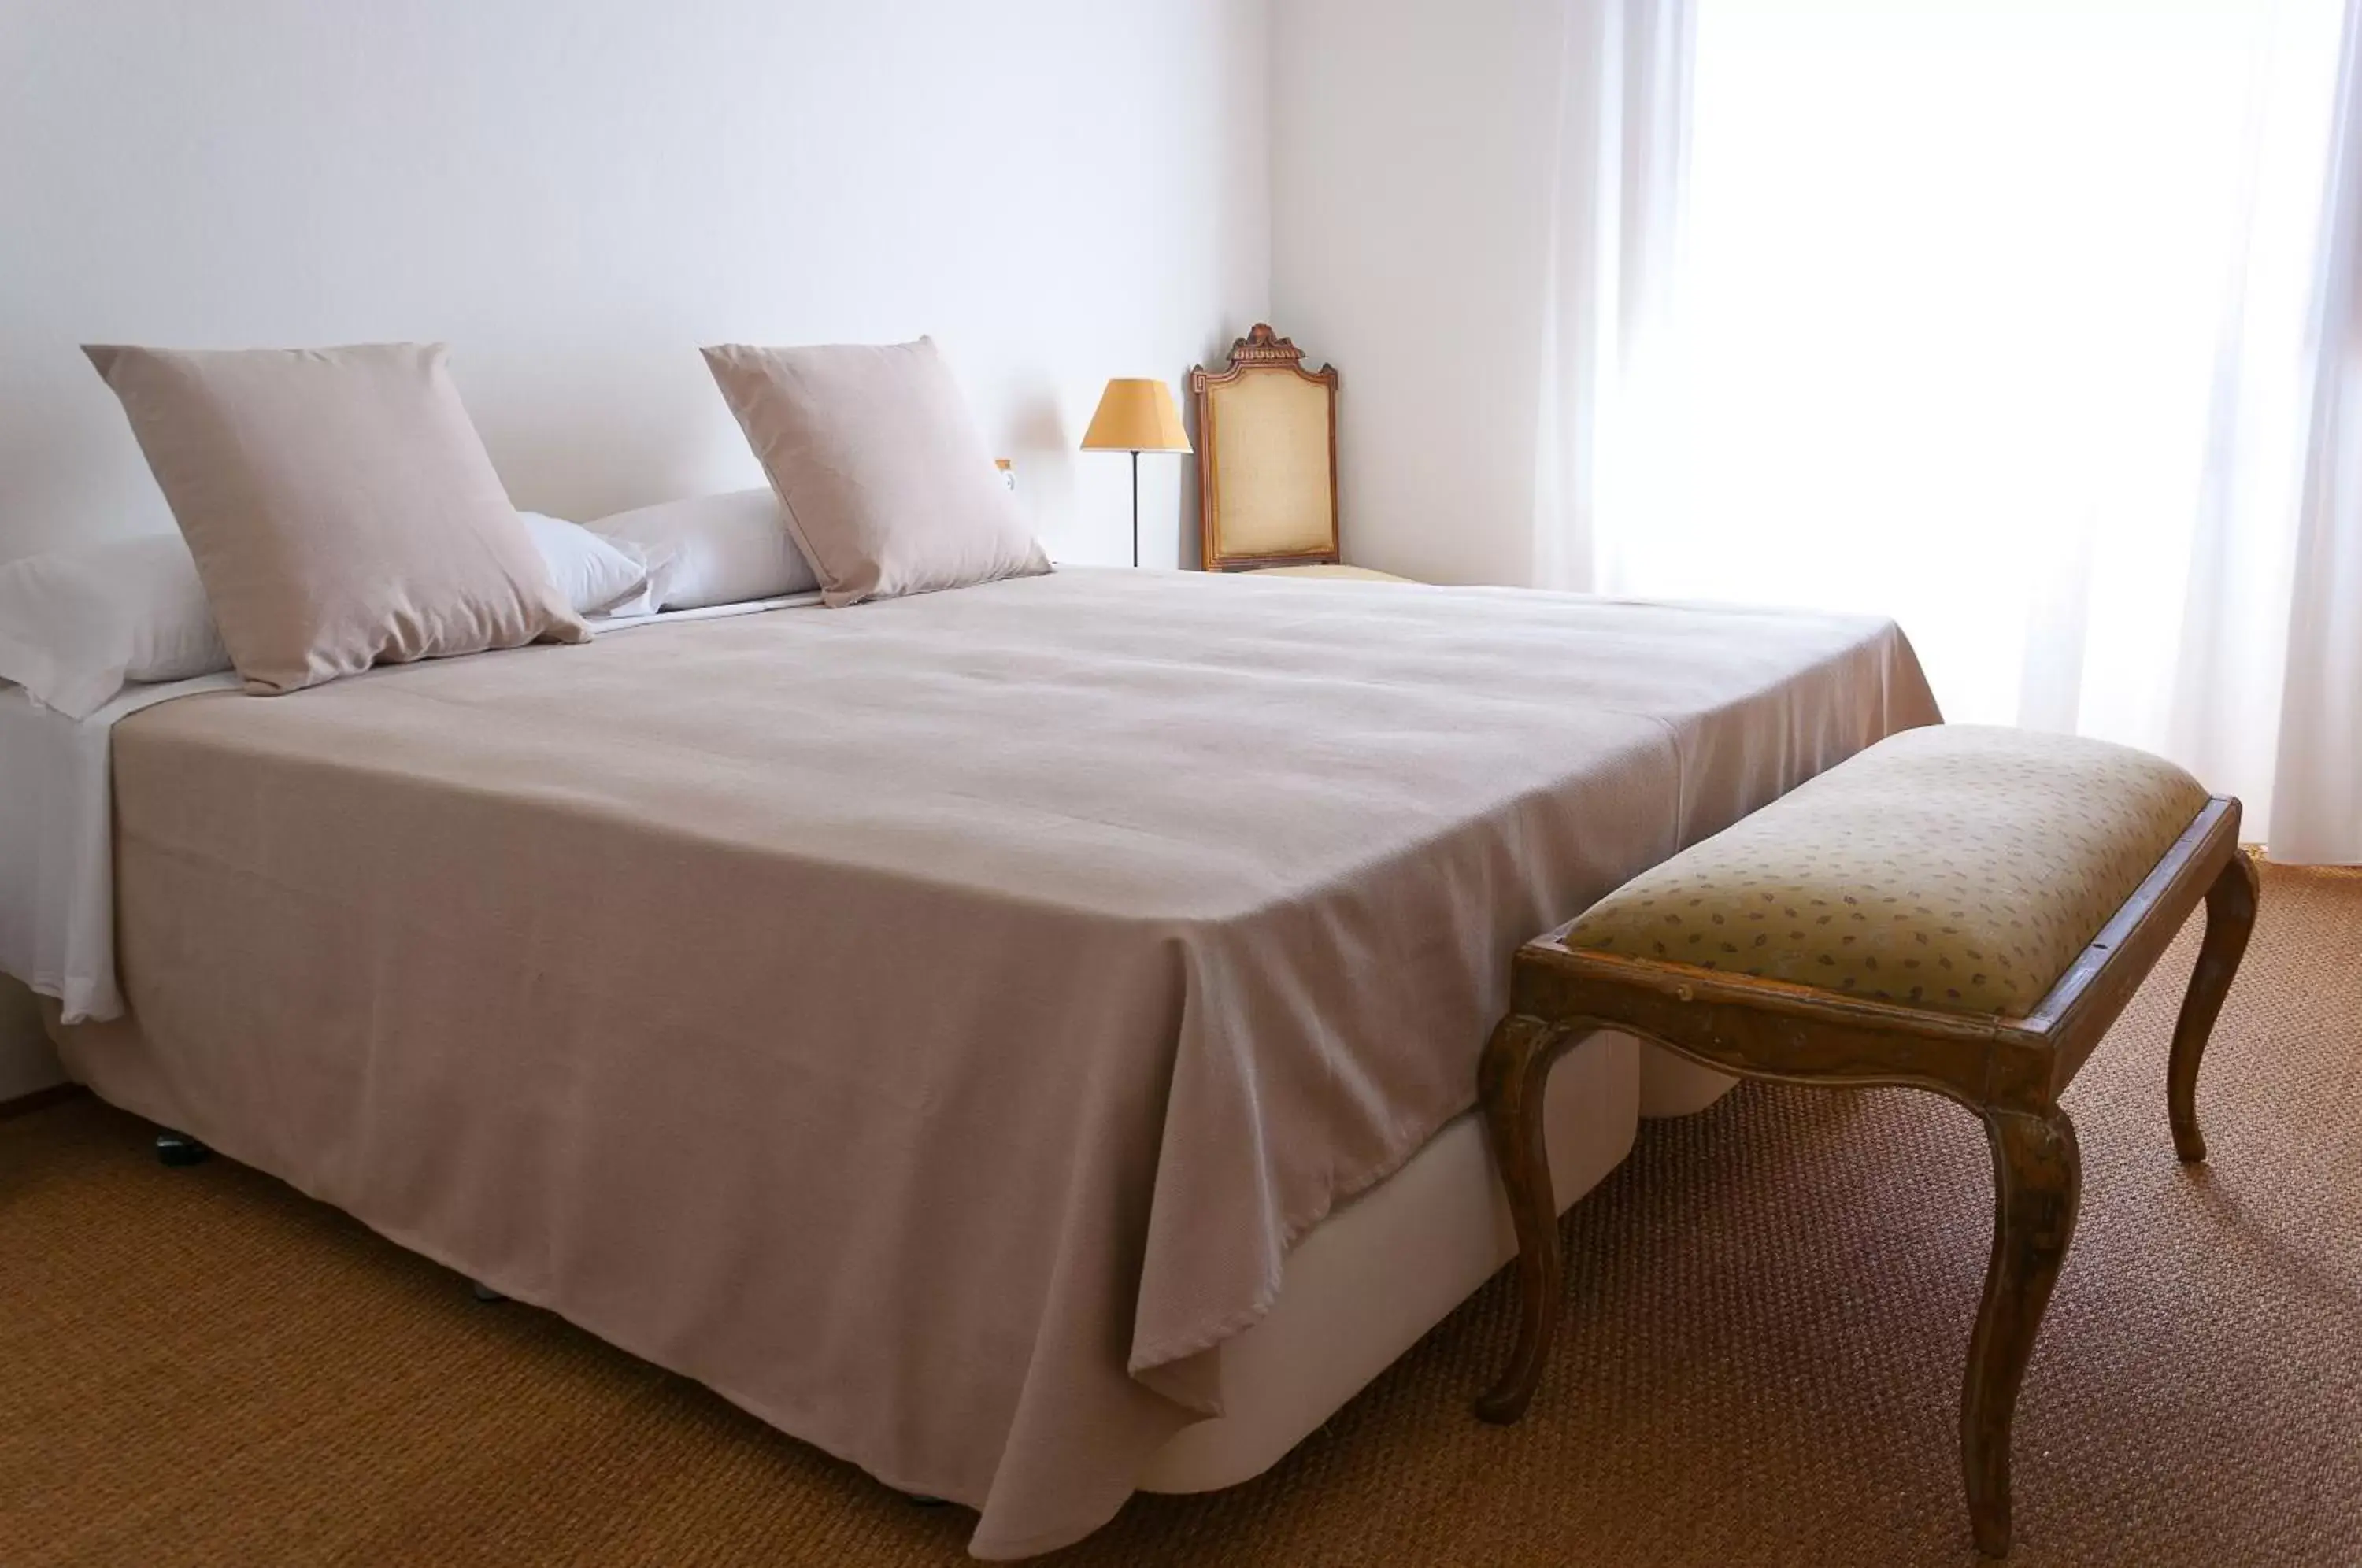 Bed in Hotel Hanoi